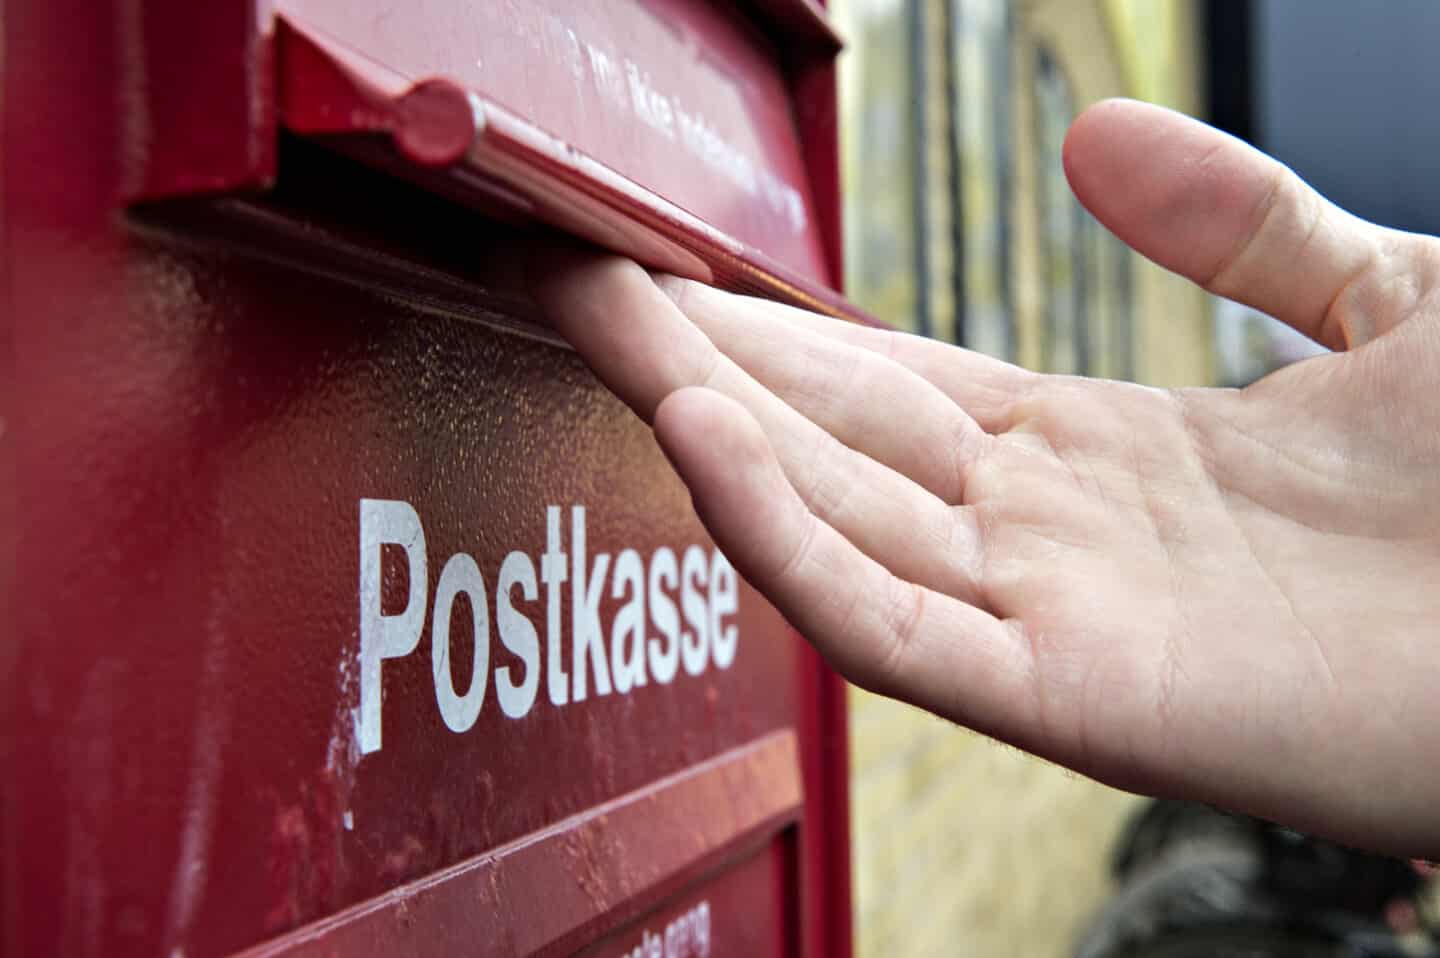 Tykke breve sendes fra PostNord har sikret postkasserne krudt |